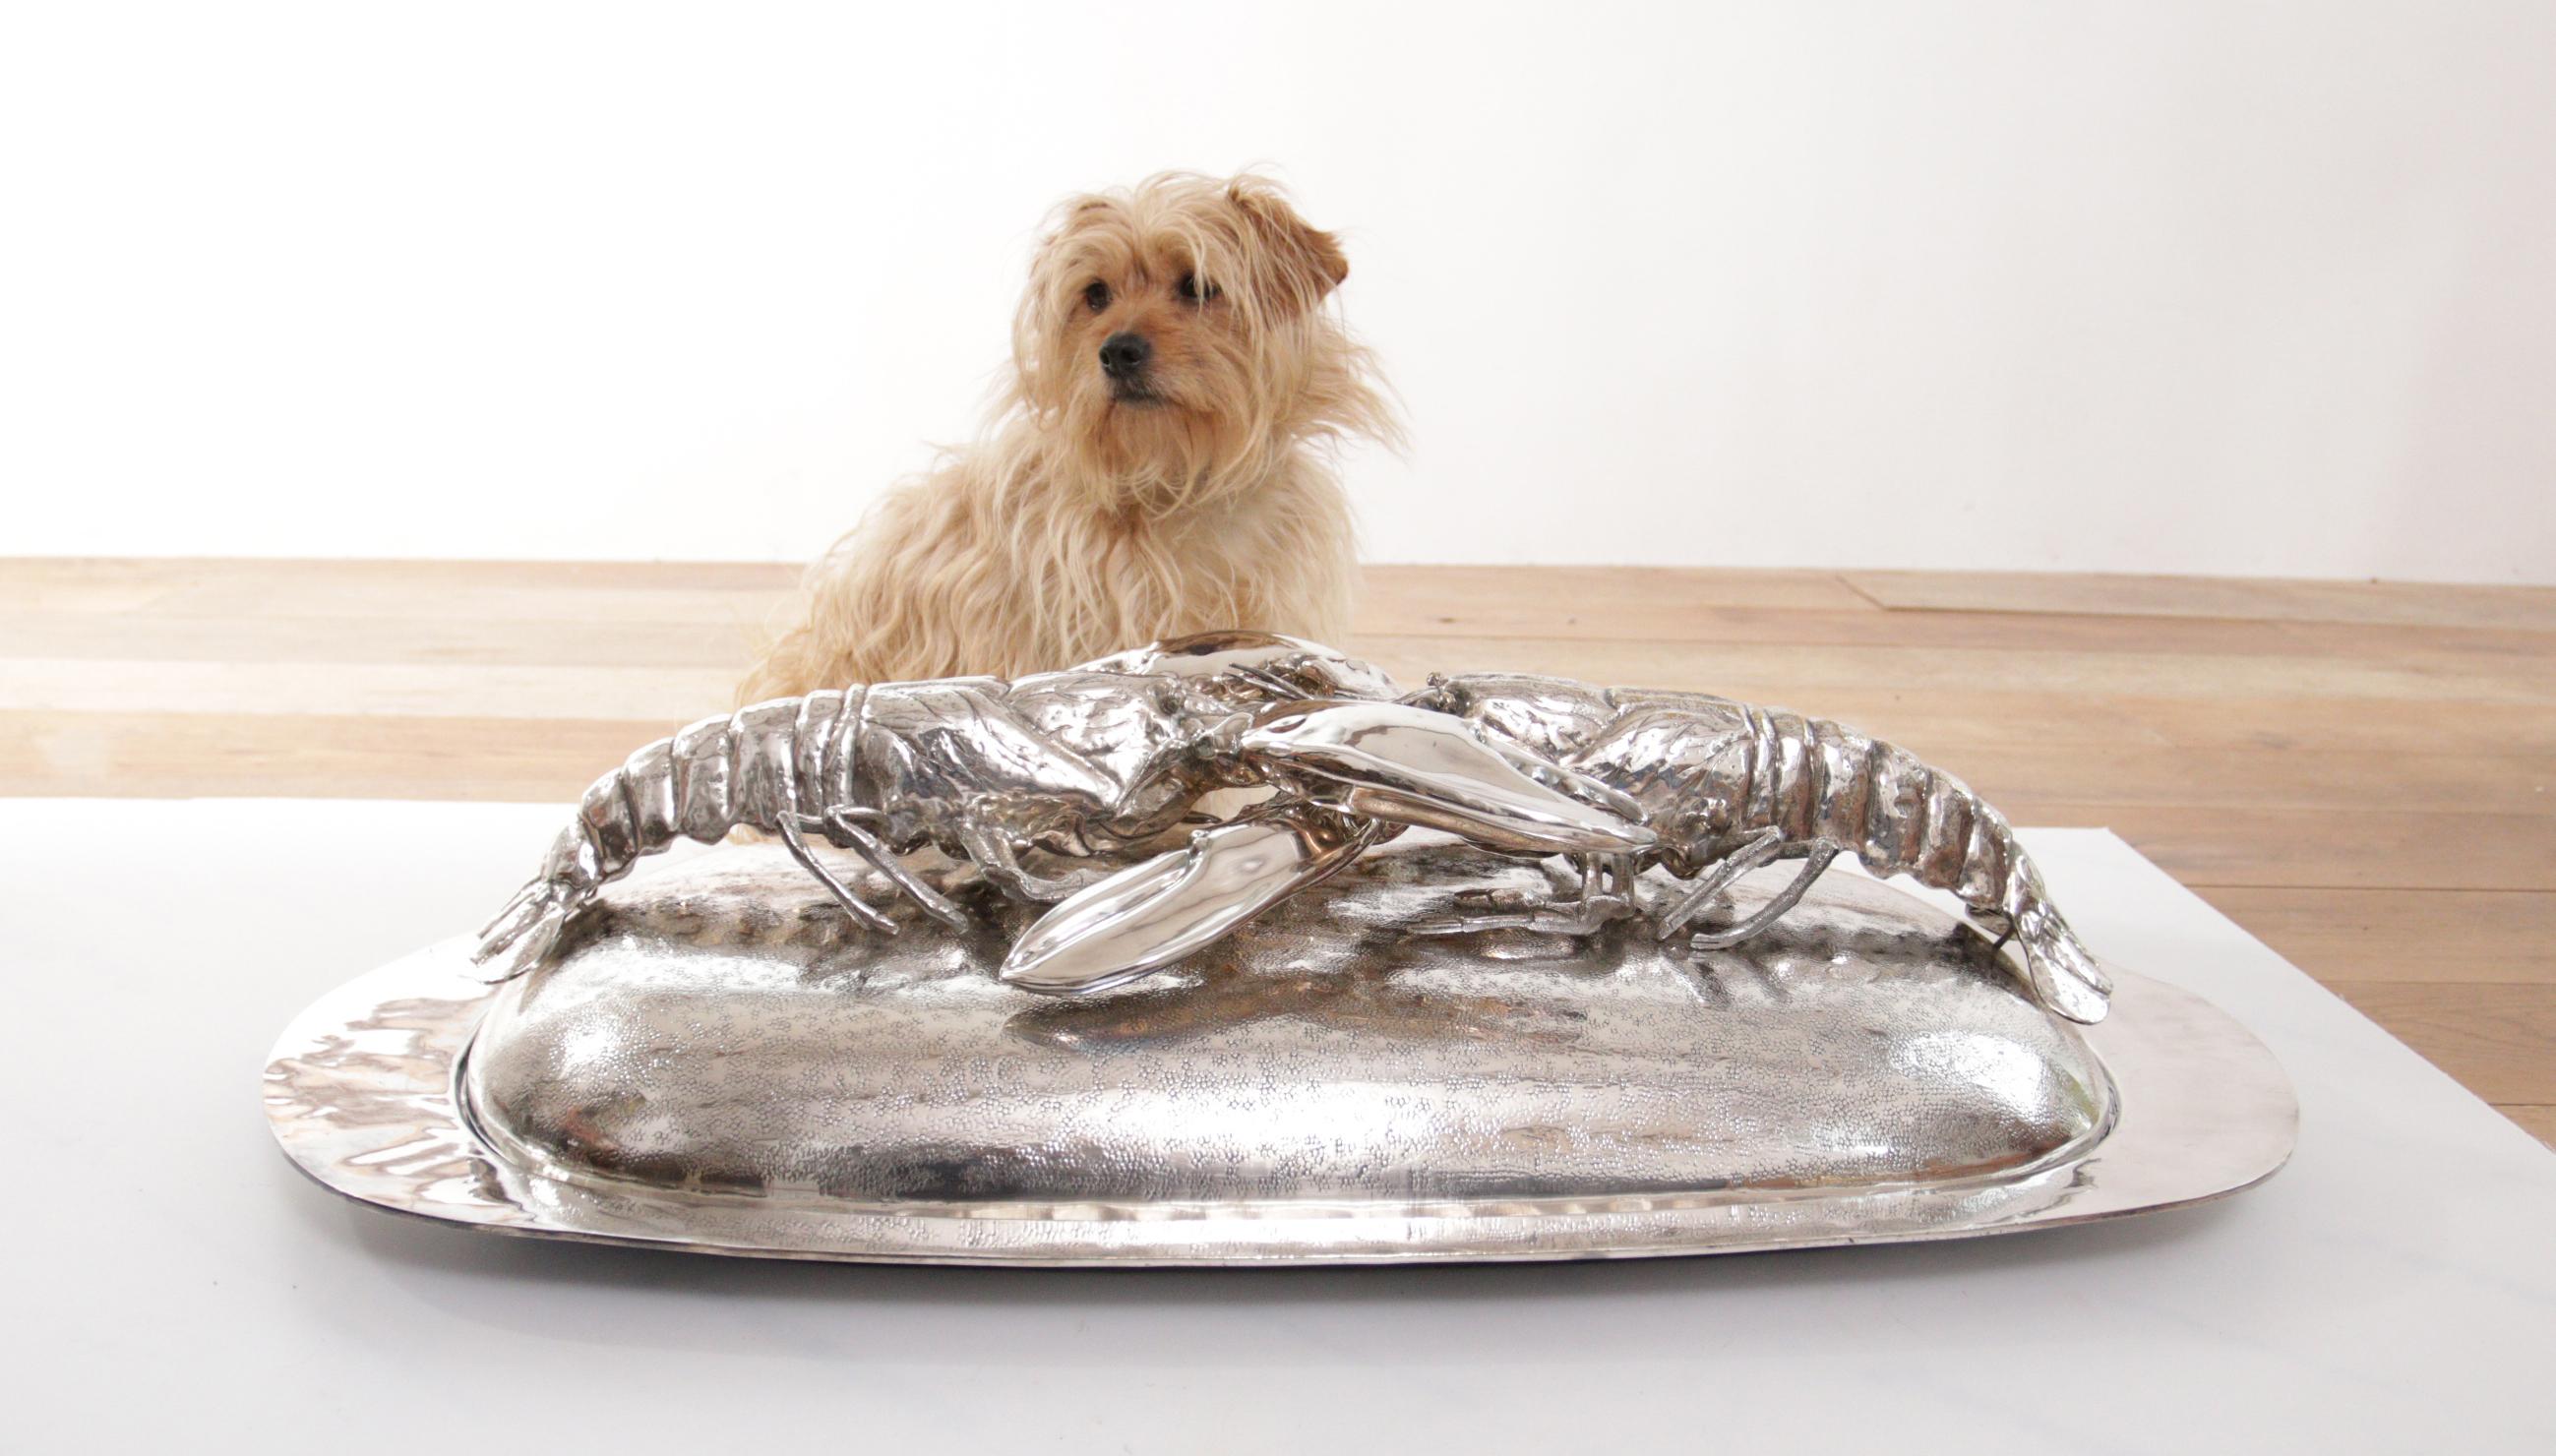 Un enorme piatto da portata in argento assolutamente magnifico, realizzato e disegnato da Franco Lapini negli anni Settanta.
Questo è uno dei più grandi capolavori che ha realizzato.
Due aragoste che si fronteggiano su una superficie